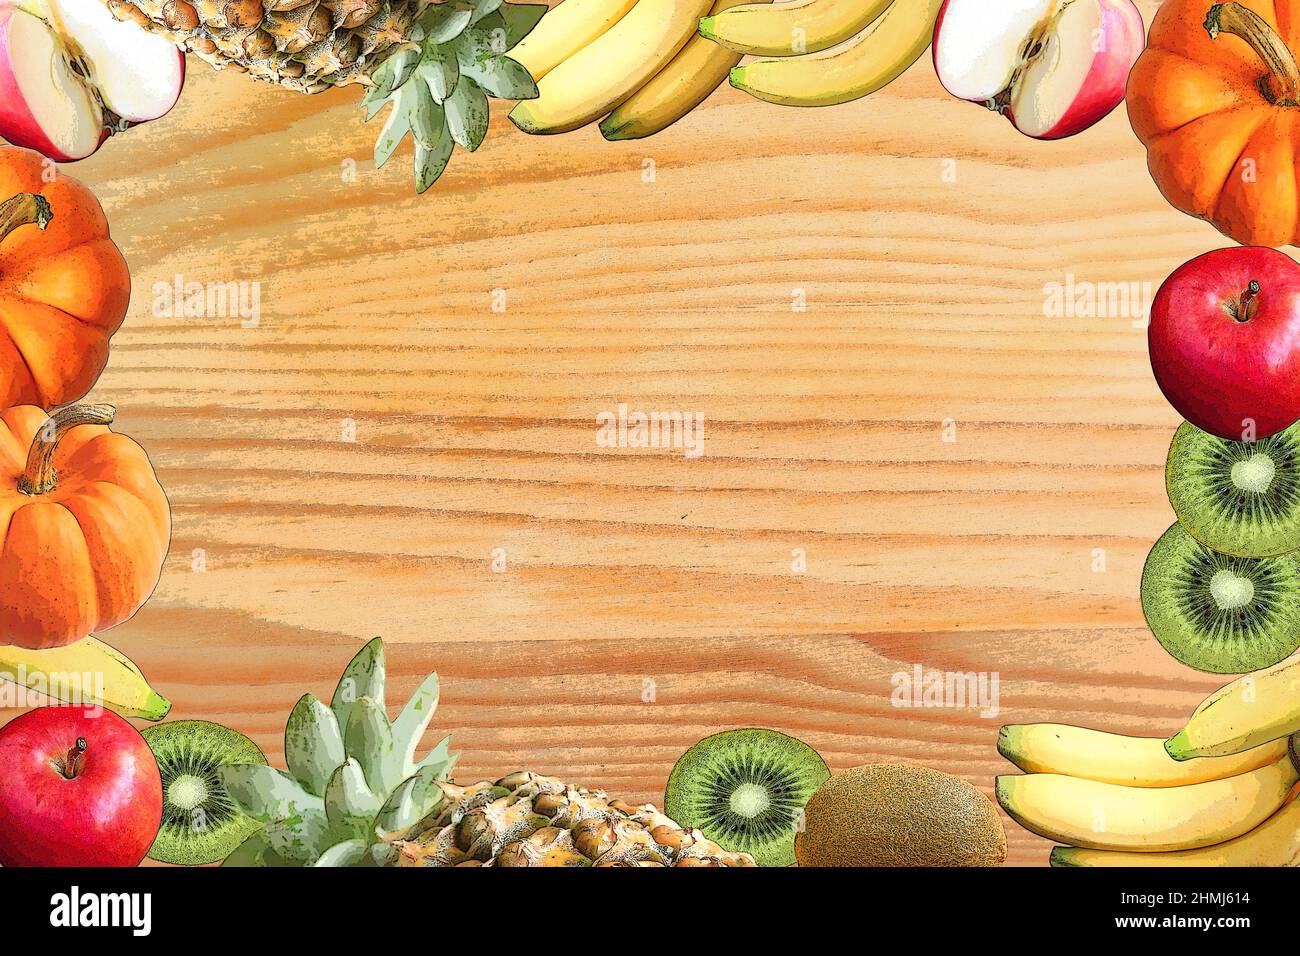 https://c8.alamy.com/comp/2HMJ614/illustration-of-frame-of-colorful-assorted-fresh-fruits-on-wooden-backdrop-2HMJ614.jpg